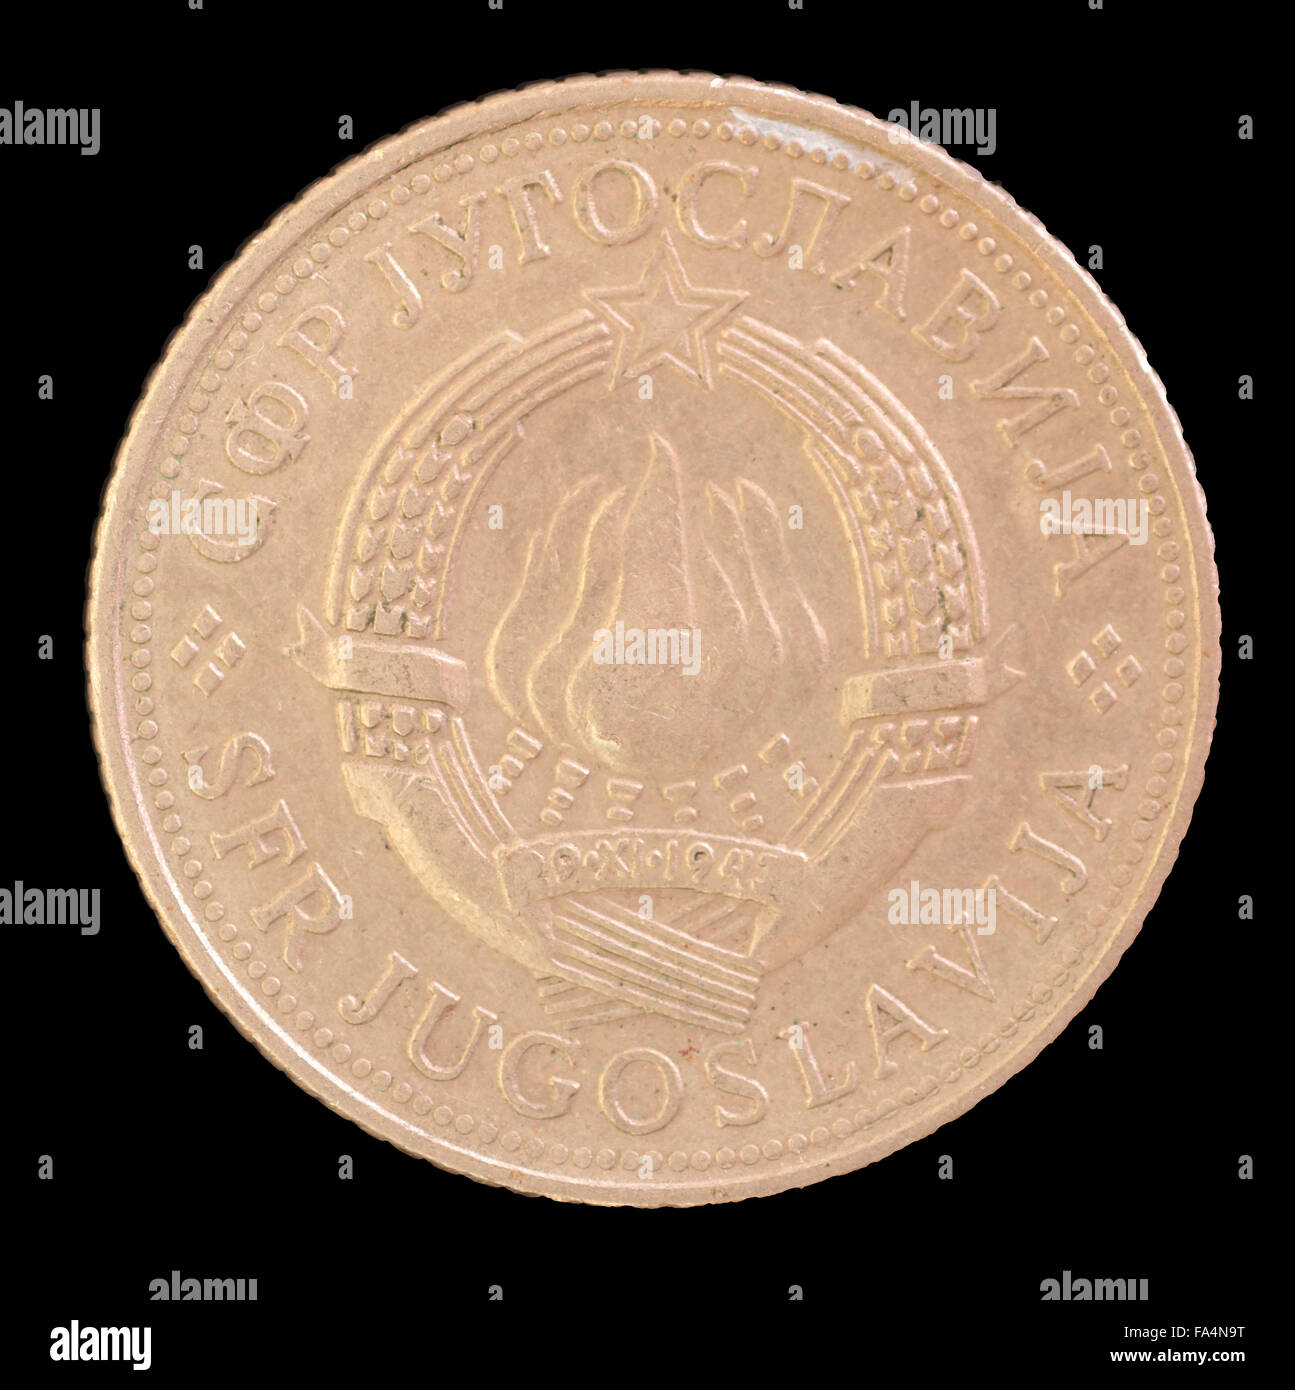 Der Kopf Gesicht 5 Dinar Münze, ausgestellt von Jugoslawien im Jahr 1971, Darstellung der Wappen der sozialistischen föderalen Republik Yug Stockfoto